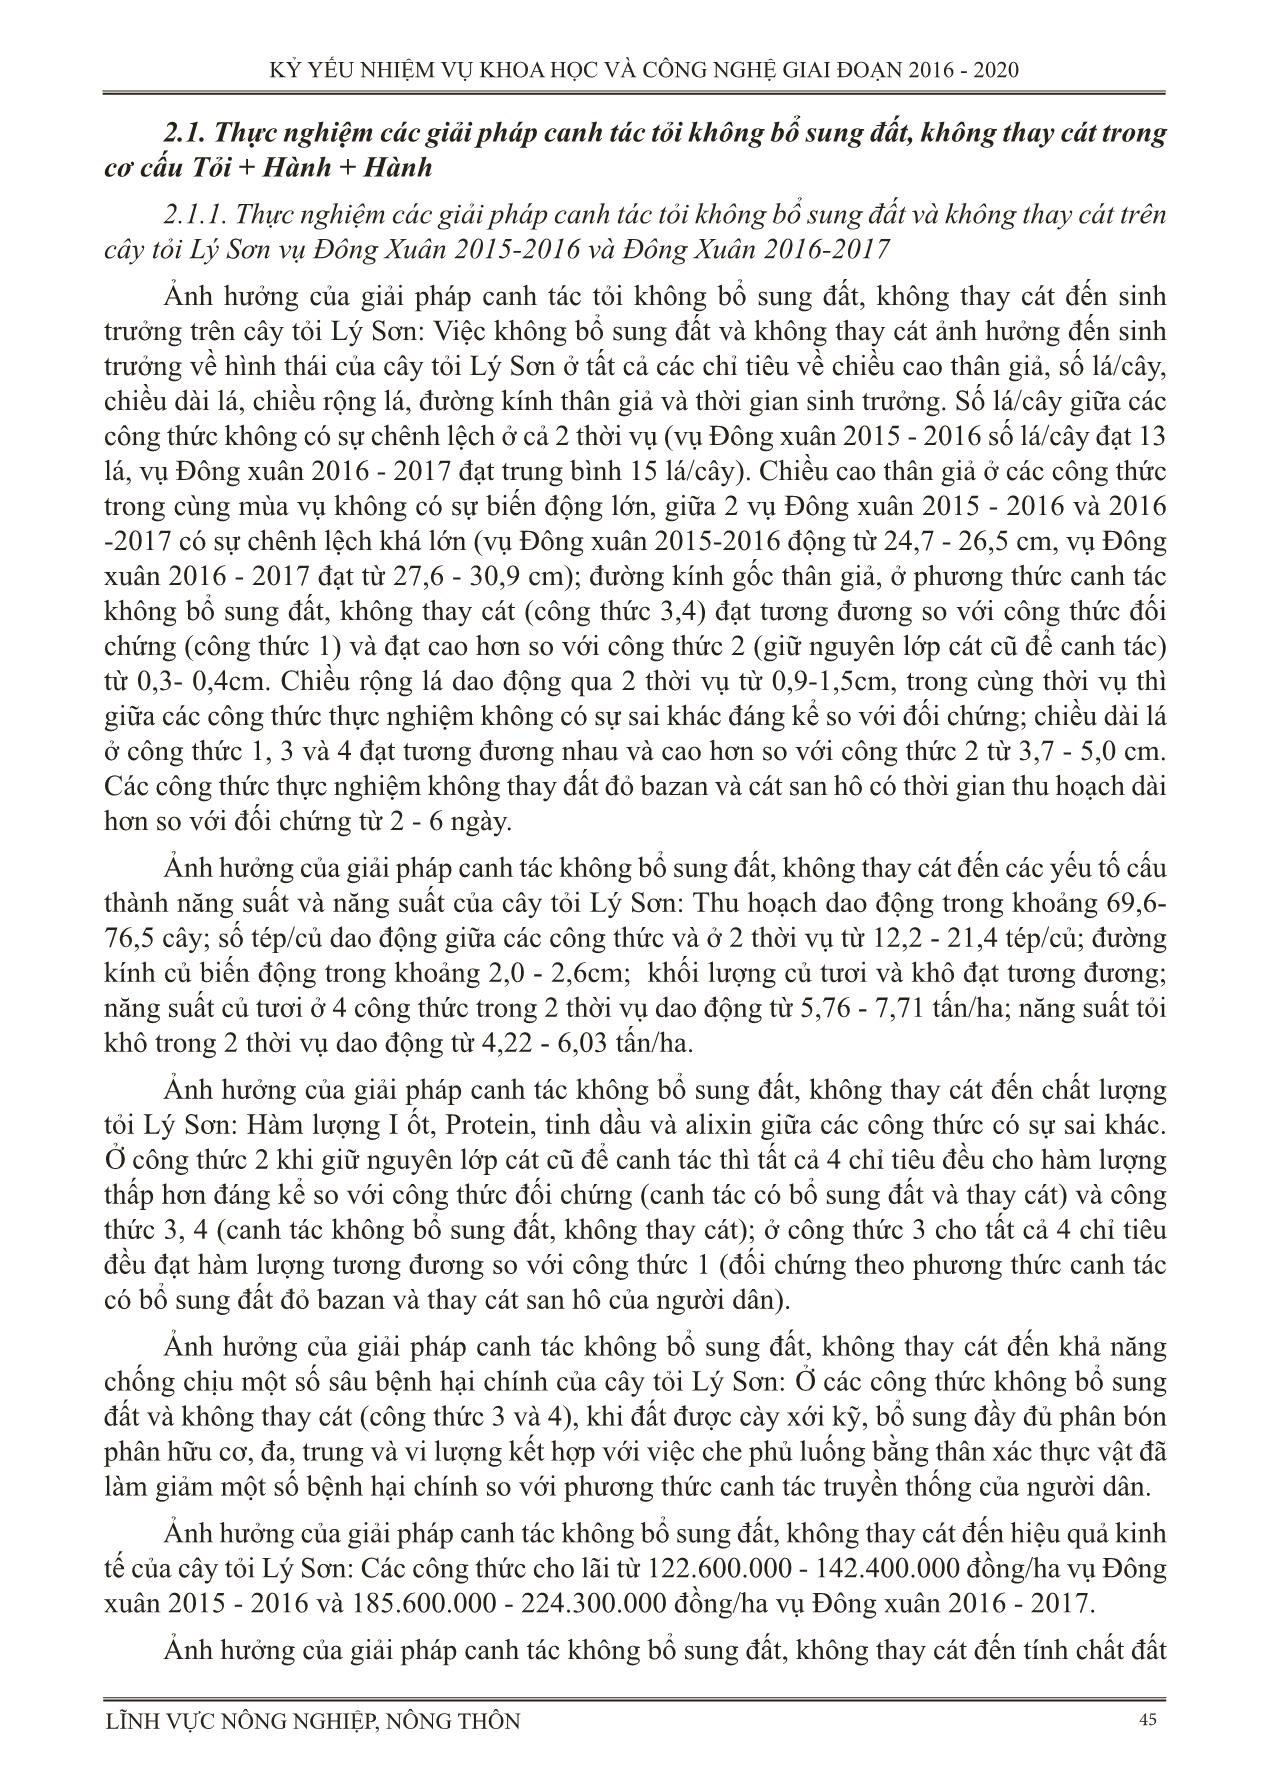 Thực nghiệm các giải pháp kỹ thuật trong canh tác tỏi ở huyện đảo Lý Sơn tỉnh Quảng Ngãi (Canh tác tỏi không bổ sung đất, không thay cát) trang 3